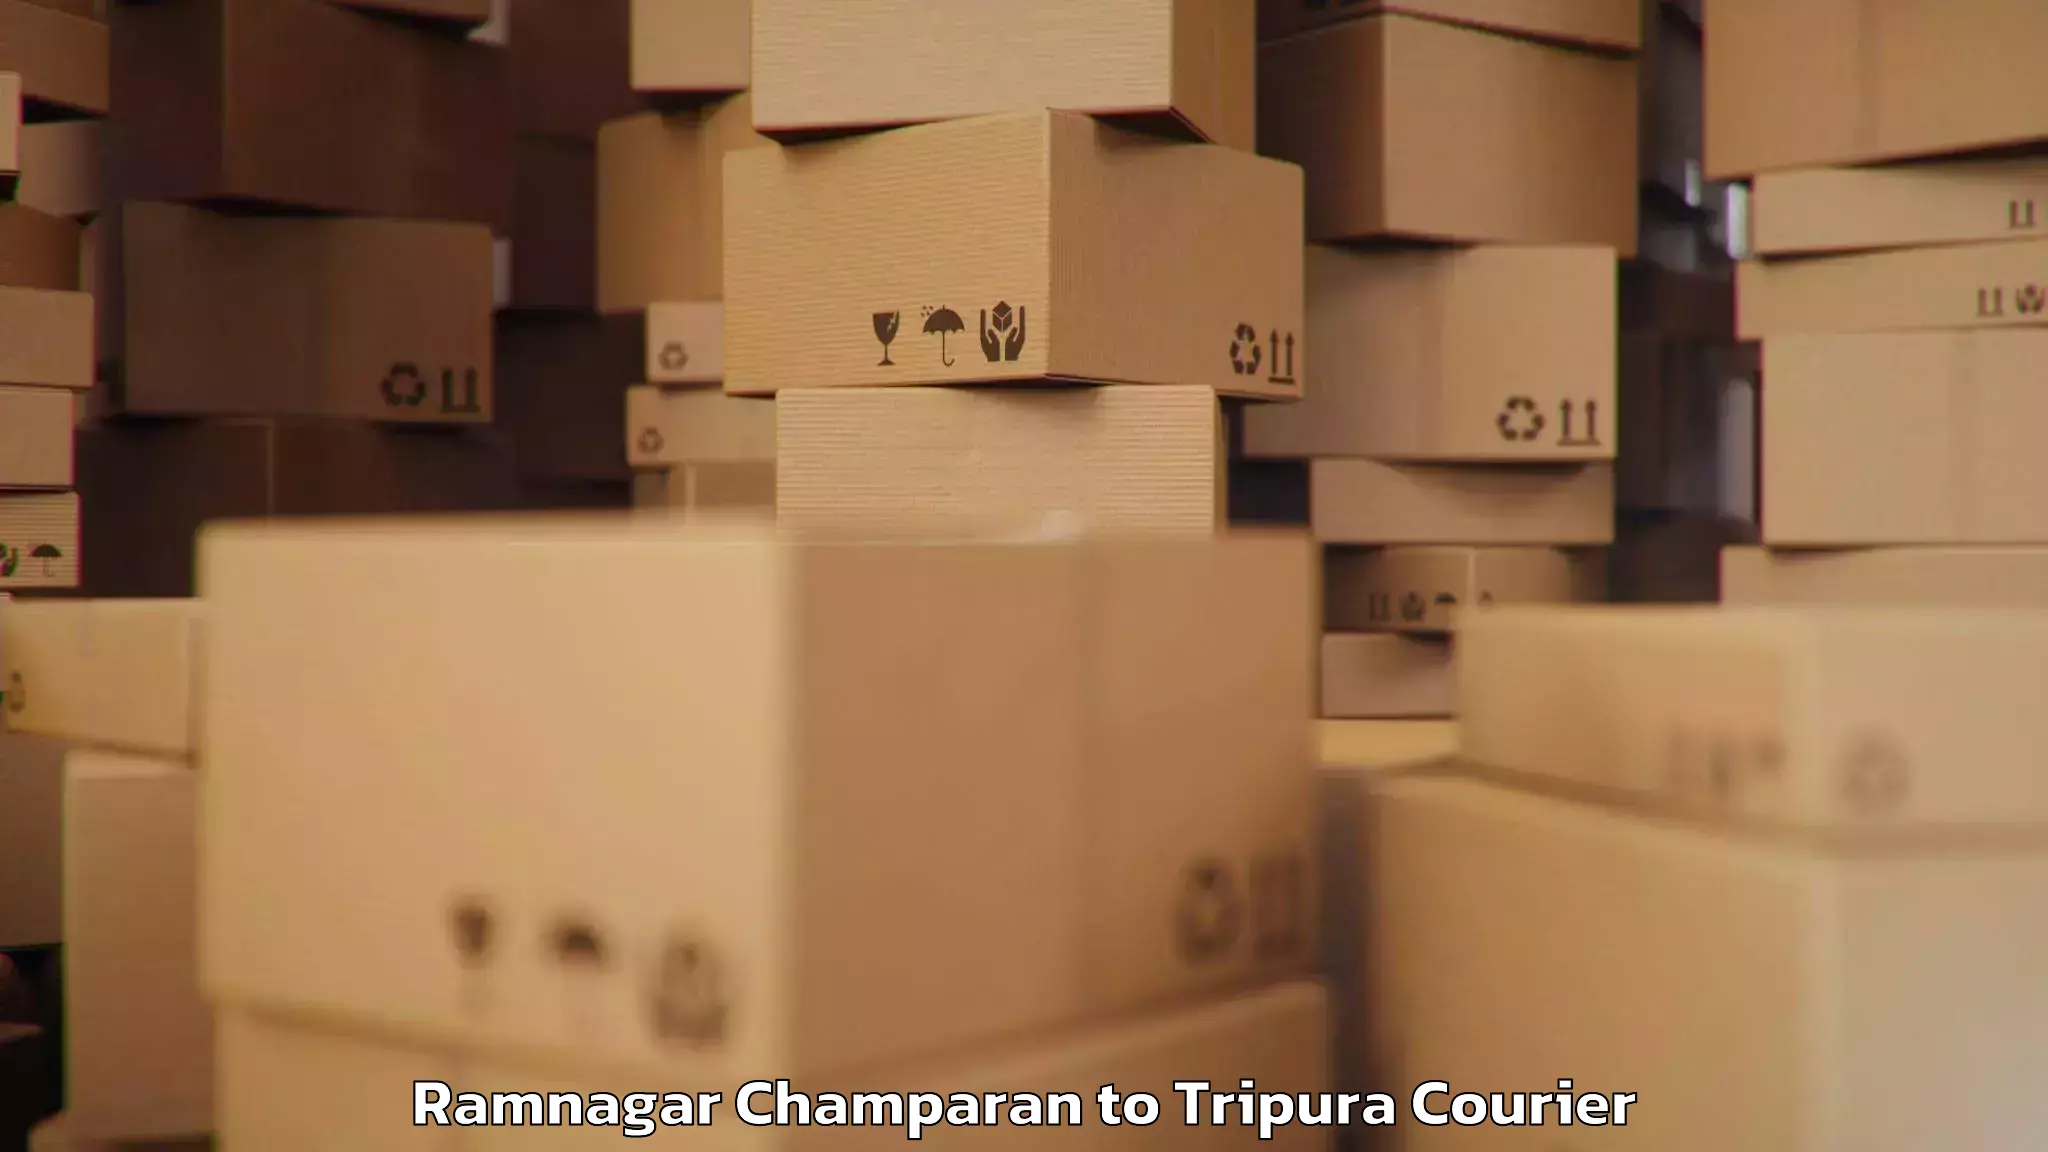 Baggage shipping quotes Ramnagar Champaran to Kailashahar